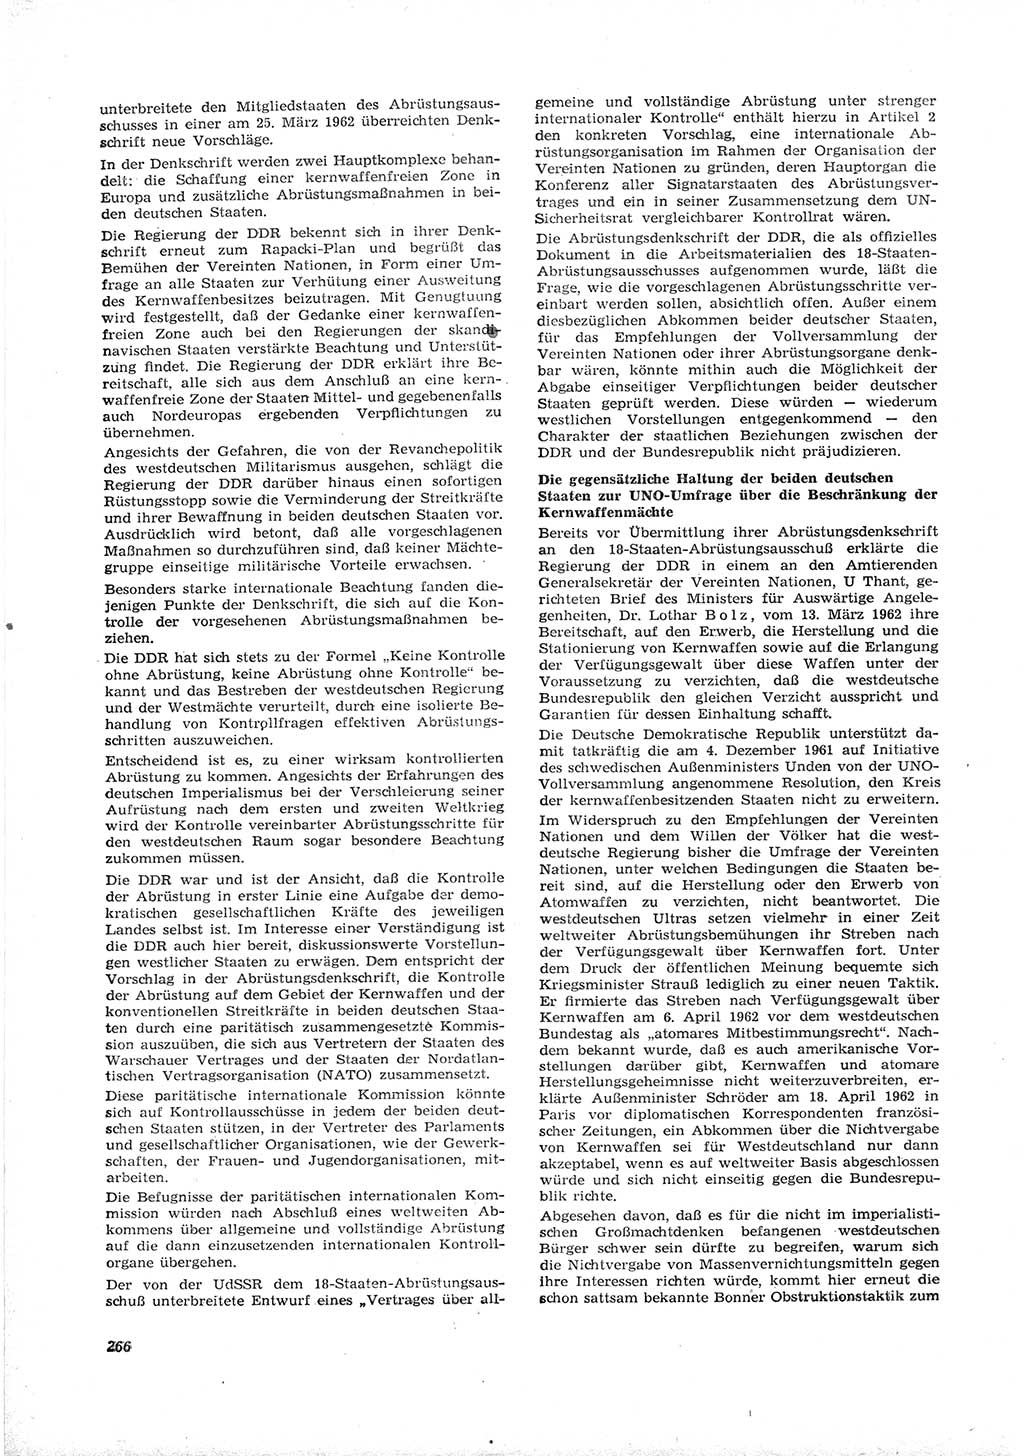 Neue Justiz (NJ), Zeitschrift für Recht und Rechtswissenschaft [Deutsche Demokratische Republik (DDR)], 16. Jahrgang 1962, Seite 266 (NJ DDR 1962, S. 266)